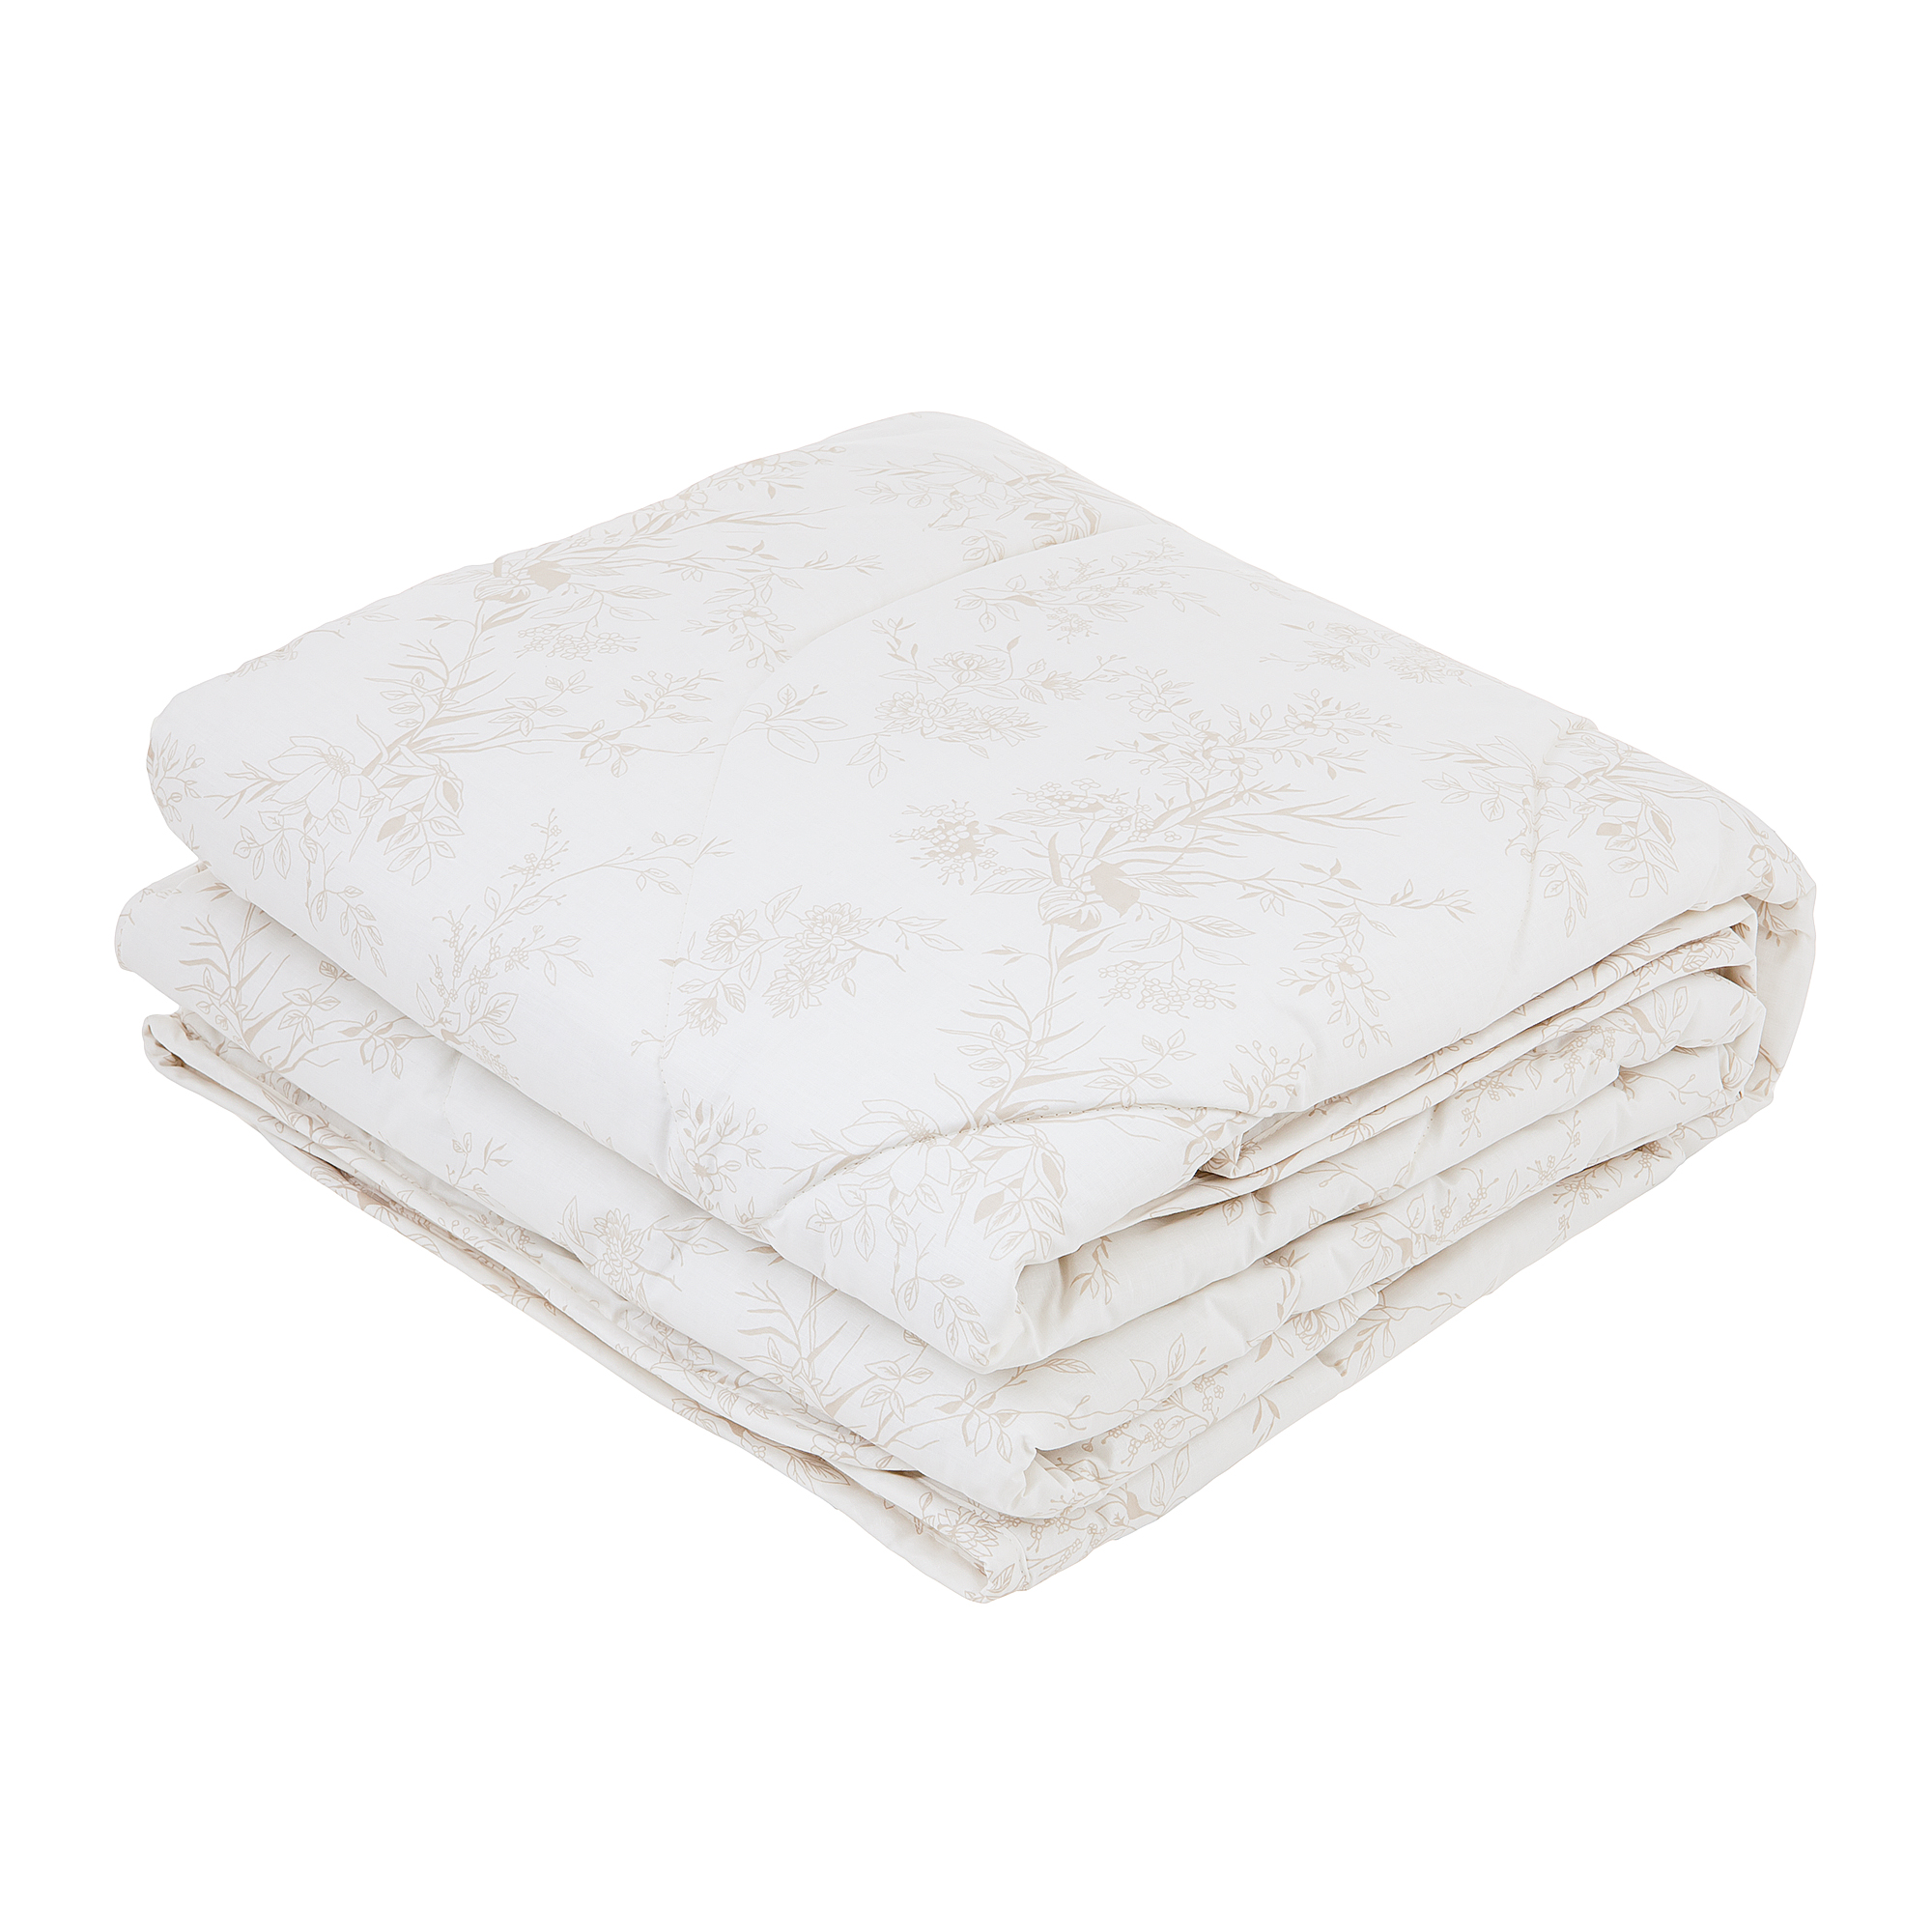 Одеяло Classic by T Хлопок-натурэль 200х210 одеяло estia монтиони легкое 200х210 см